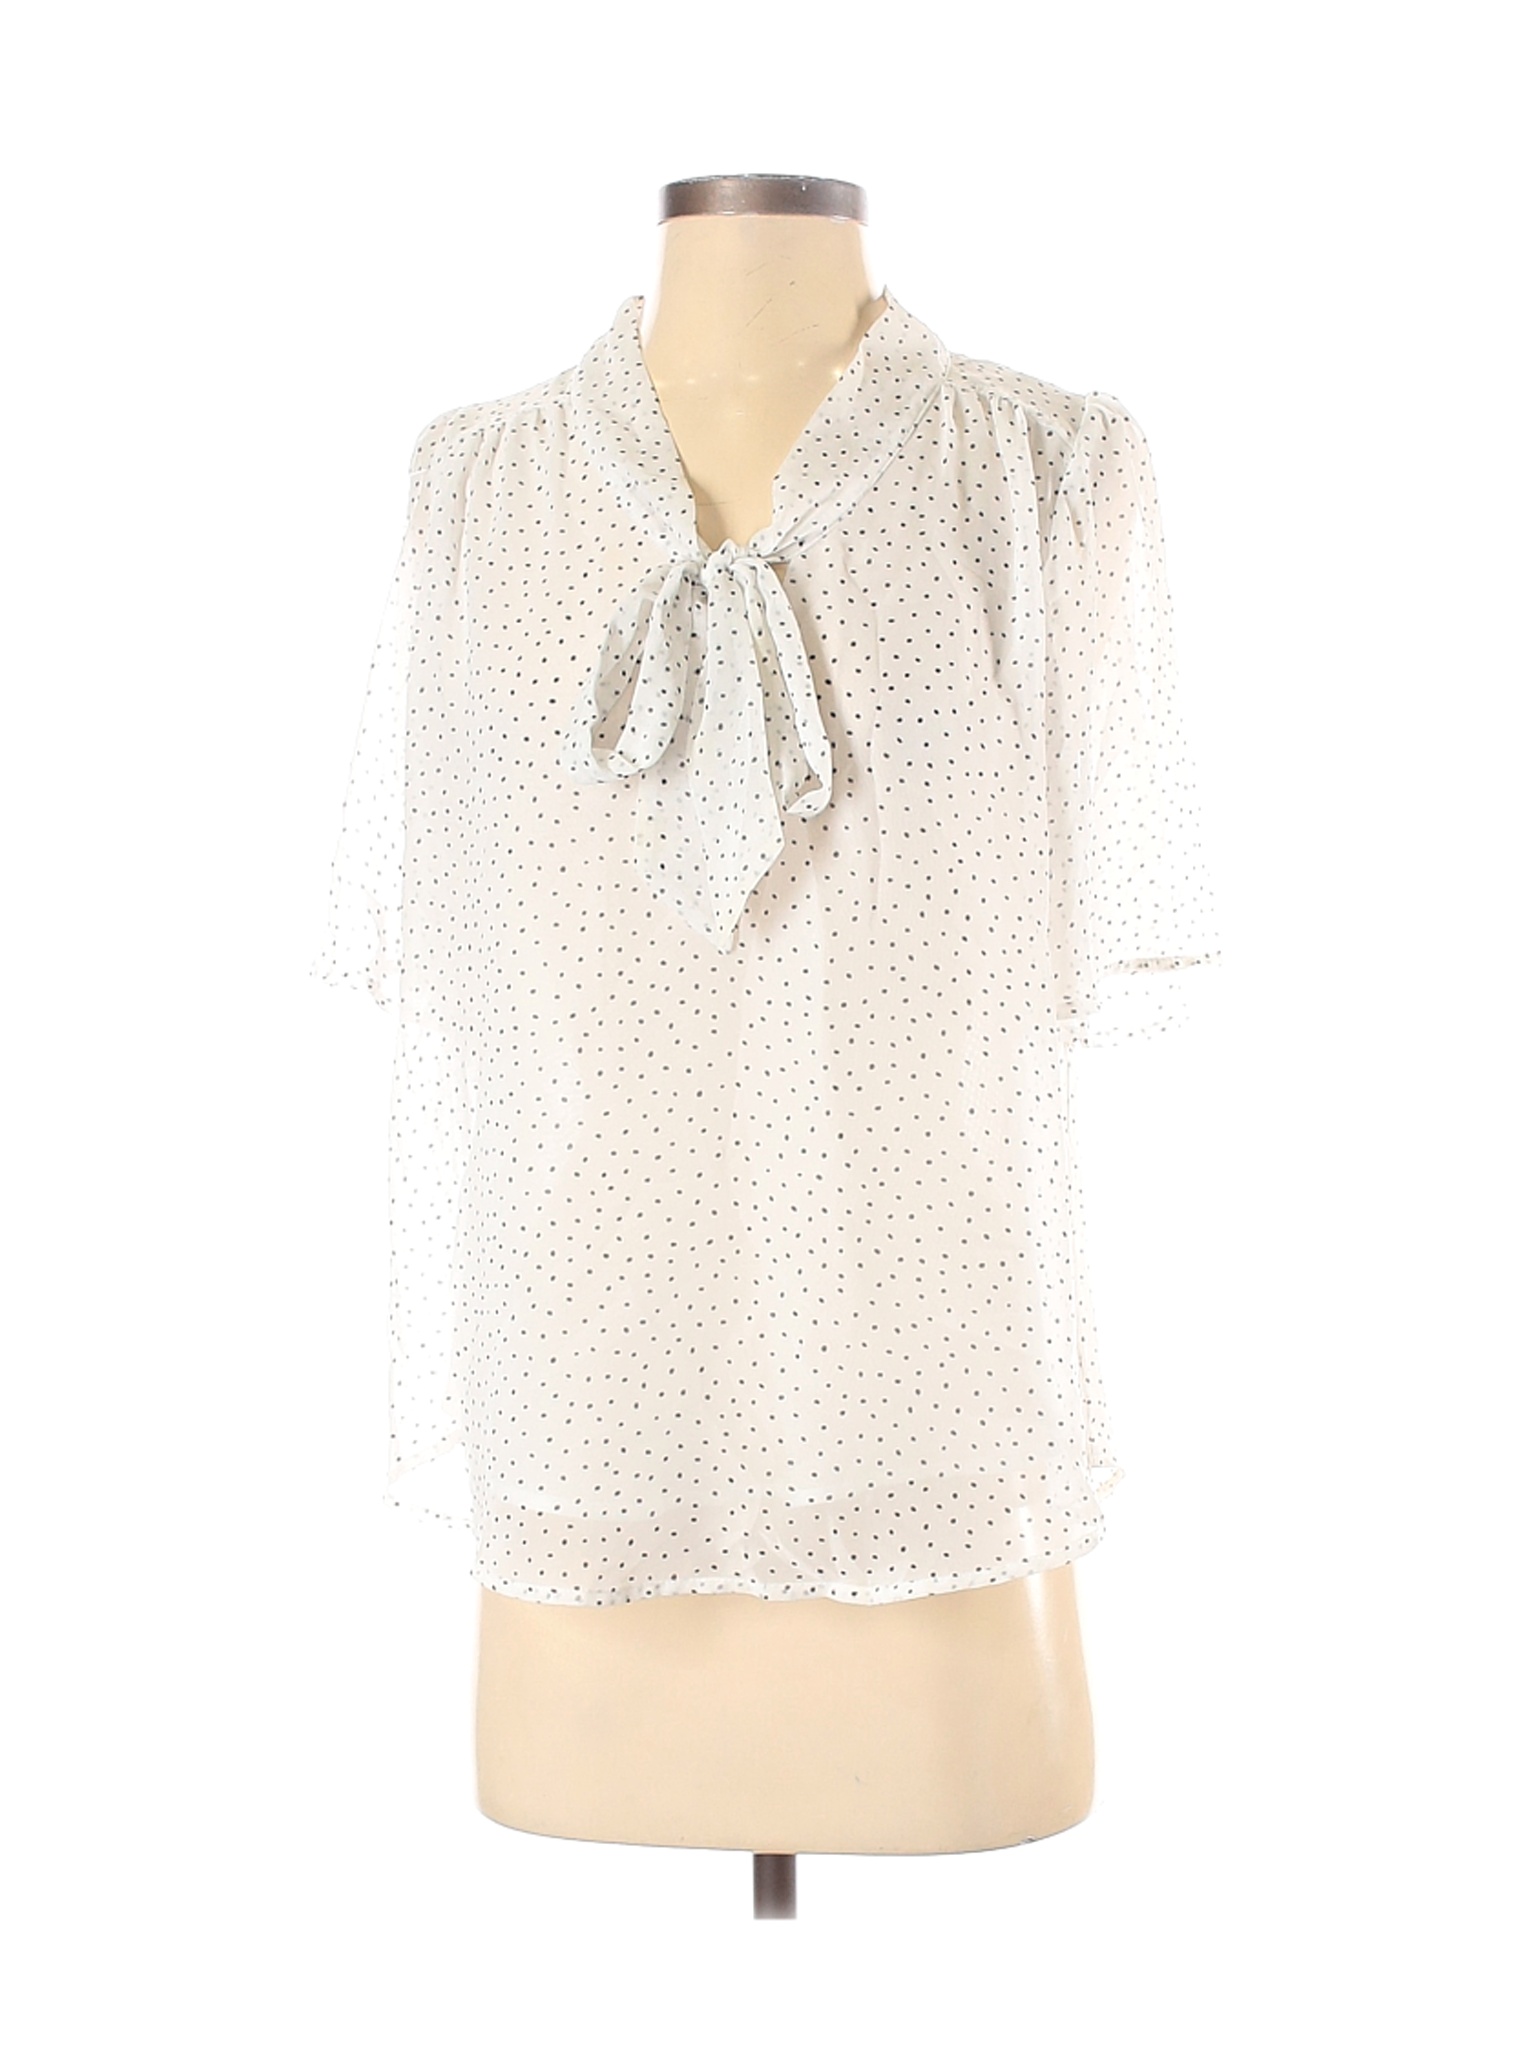 Sienna Sky Women White Short Sleeve Blouse S | eBay